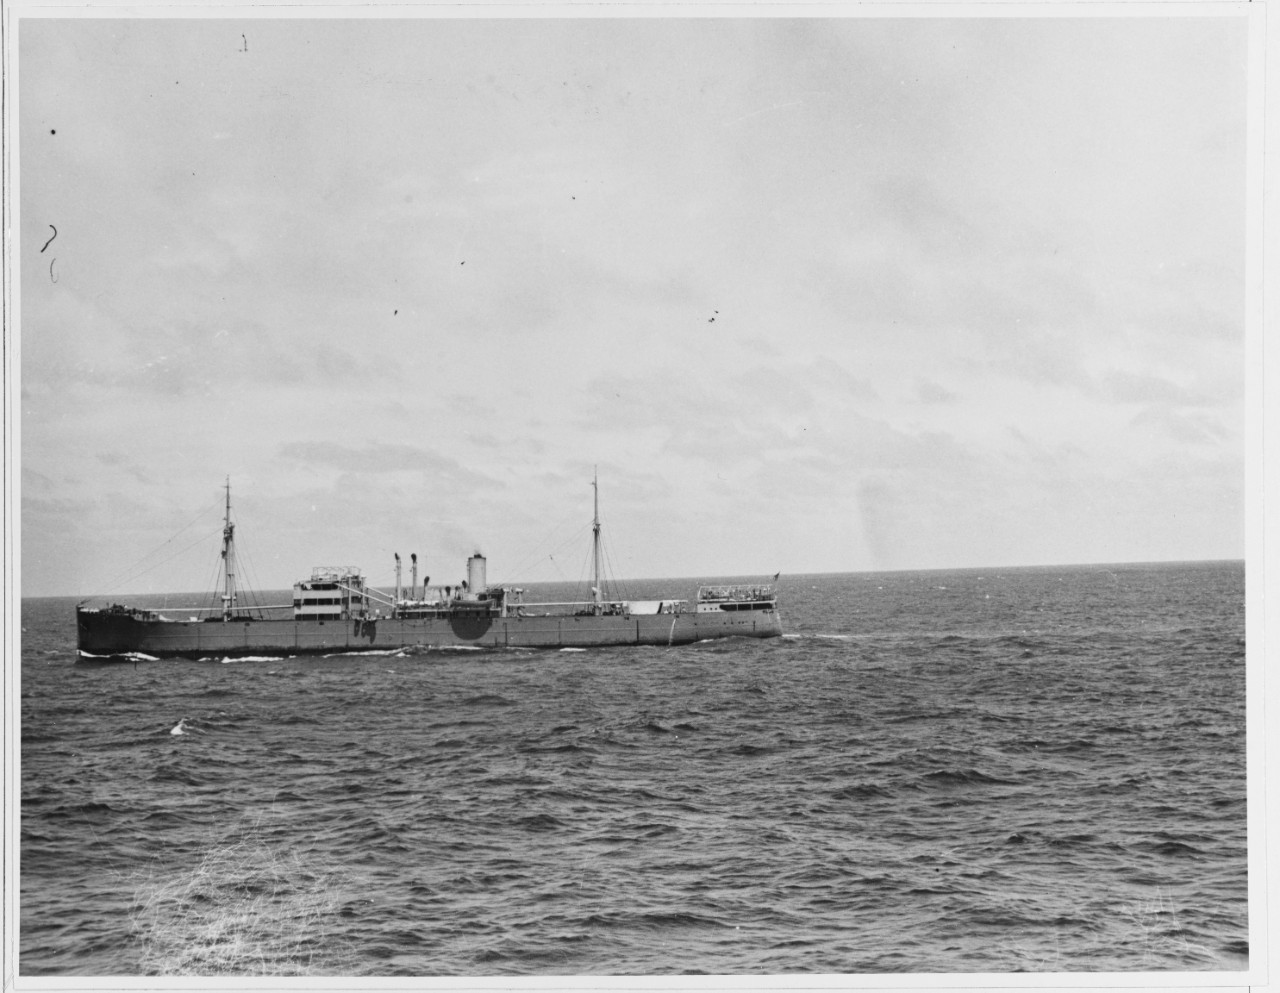 USS OMAHA/ODENWALD Incident, World War II